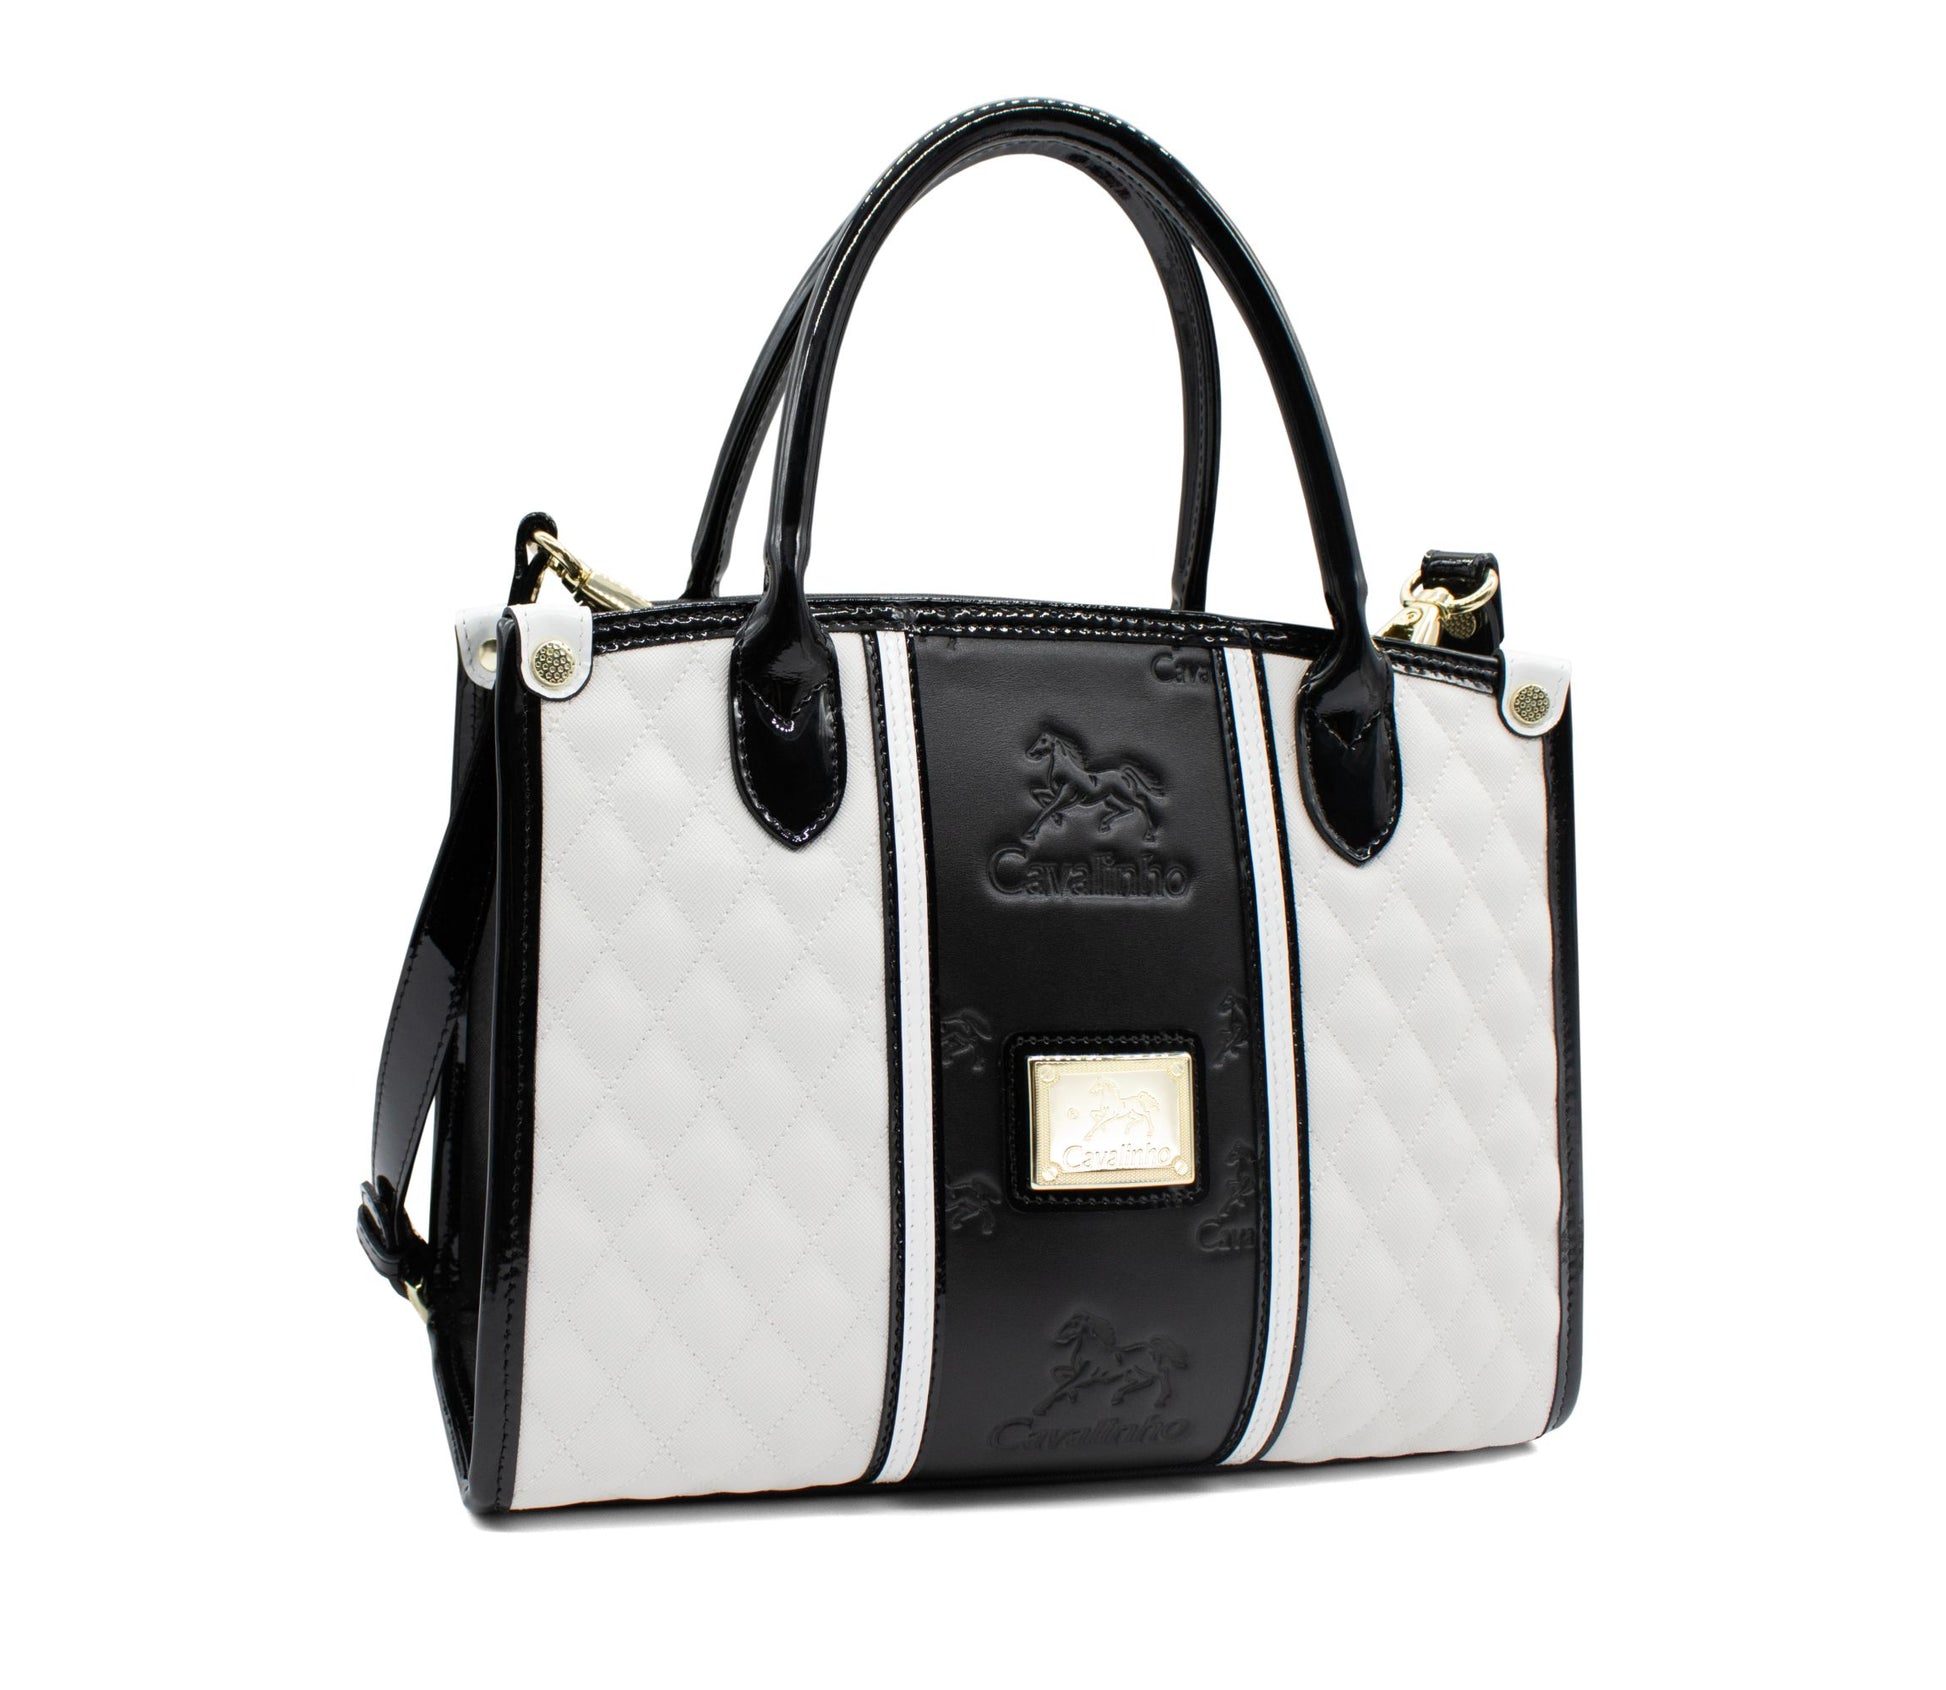 Cavalinho Noble Handbag - Black - 18180480.33_2